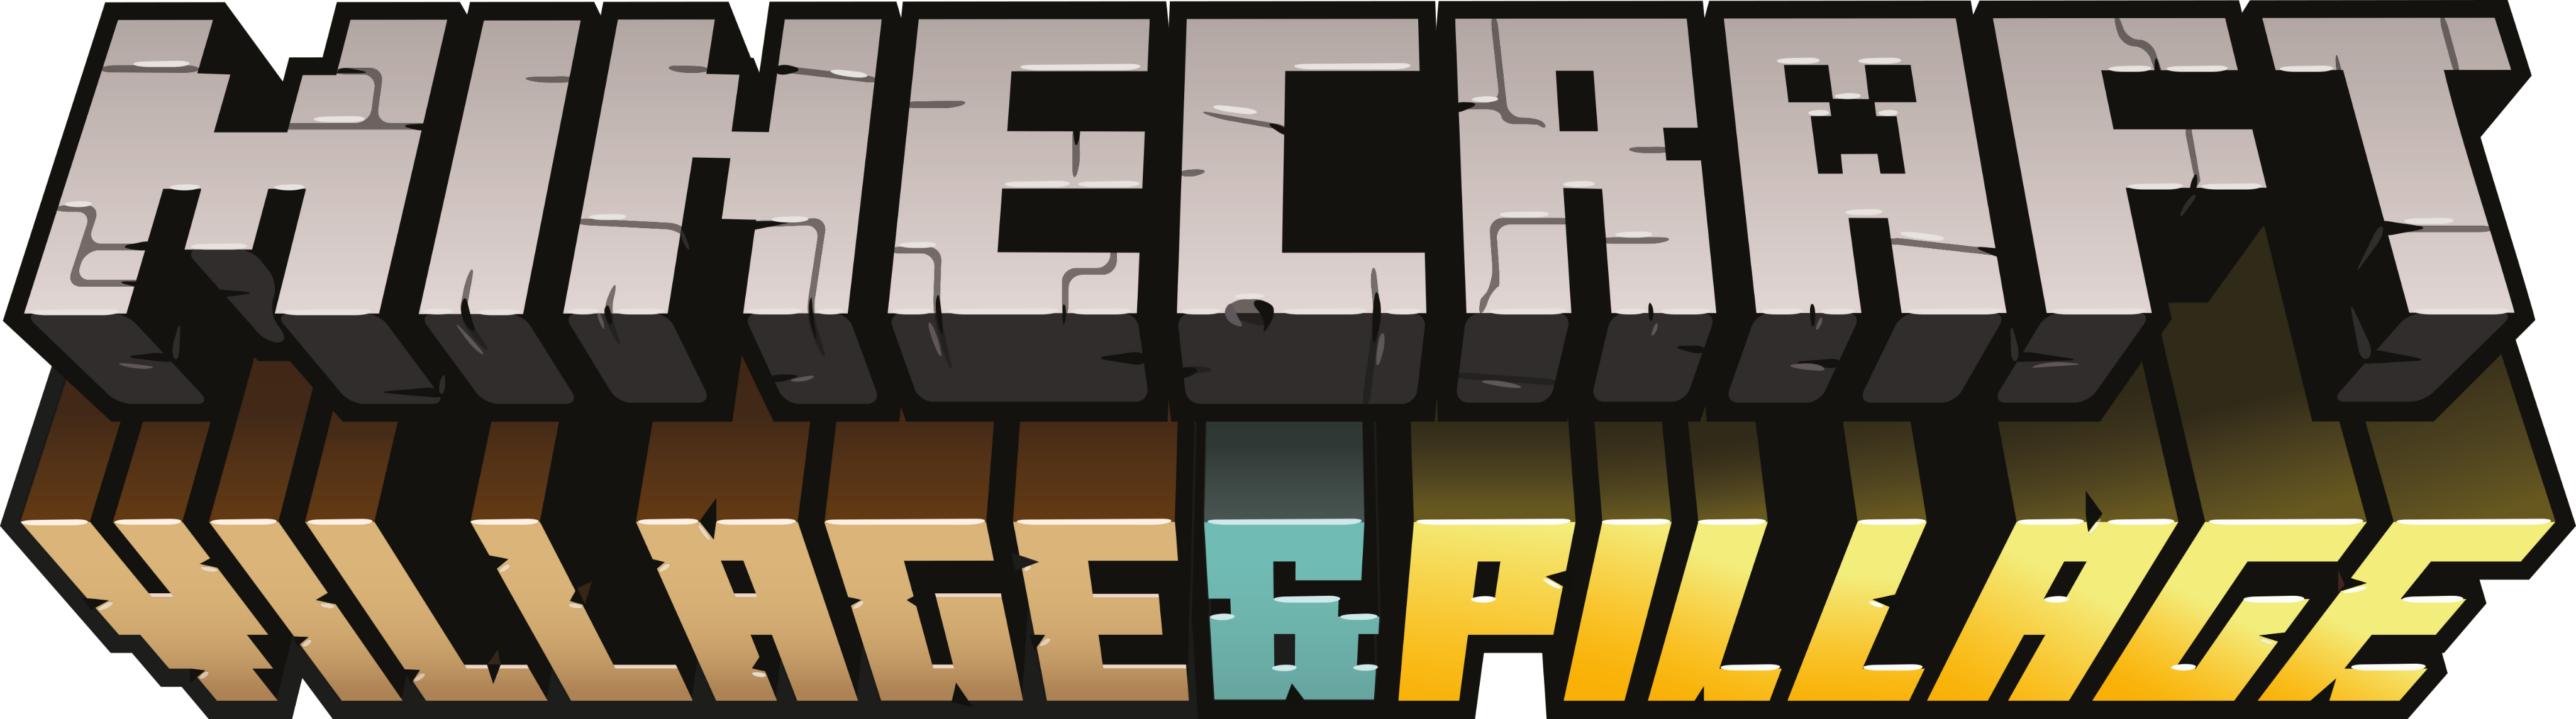 Village Pillage Official Minecraft Wiki